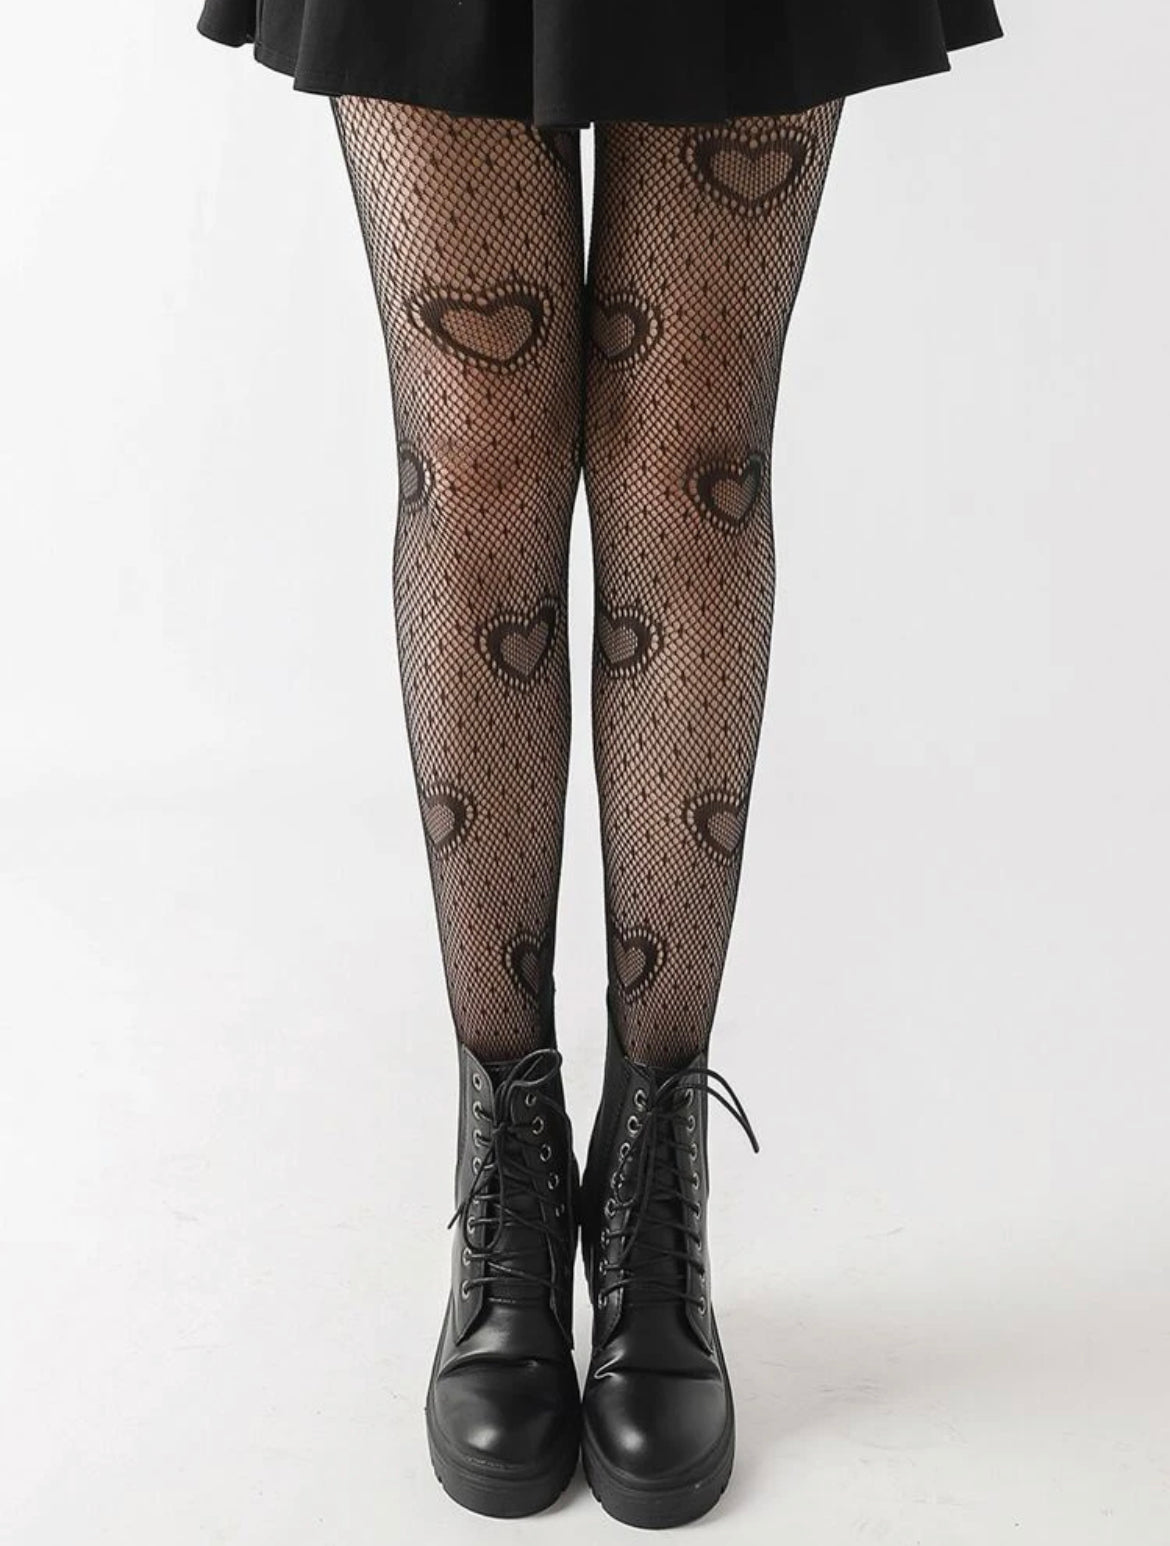 Fishnet heart stockings/heart leggings in black or white – Steelo and Sass